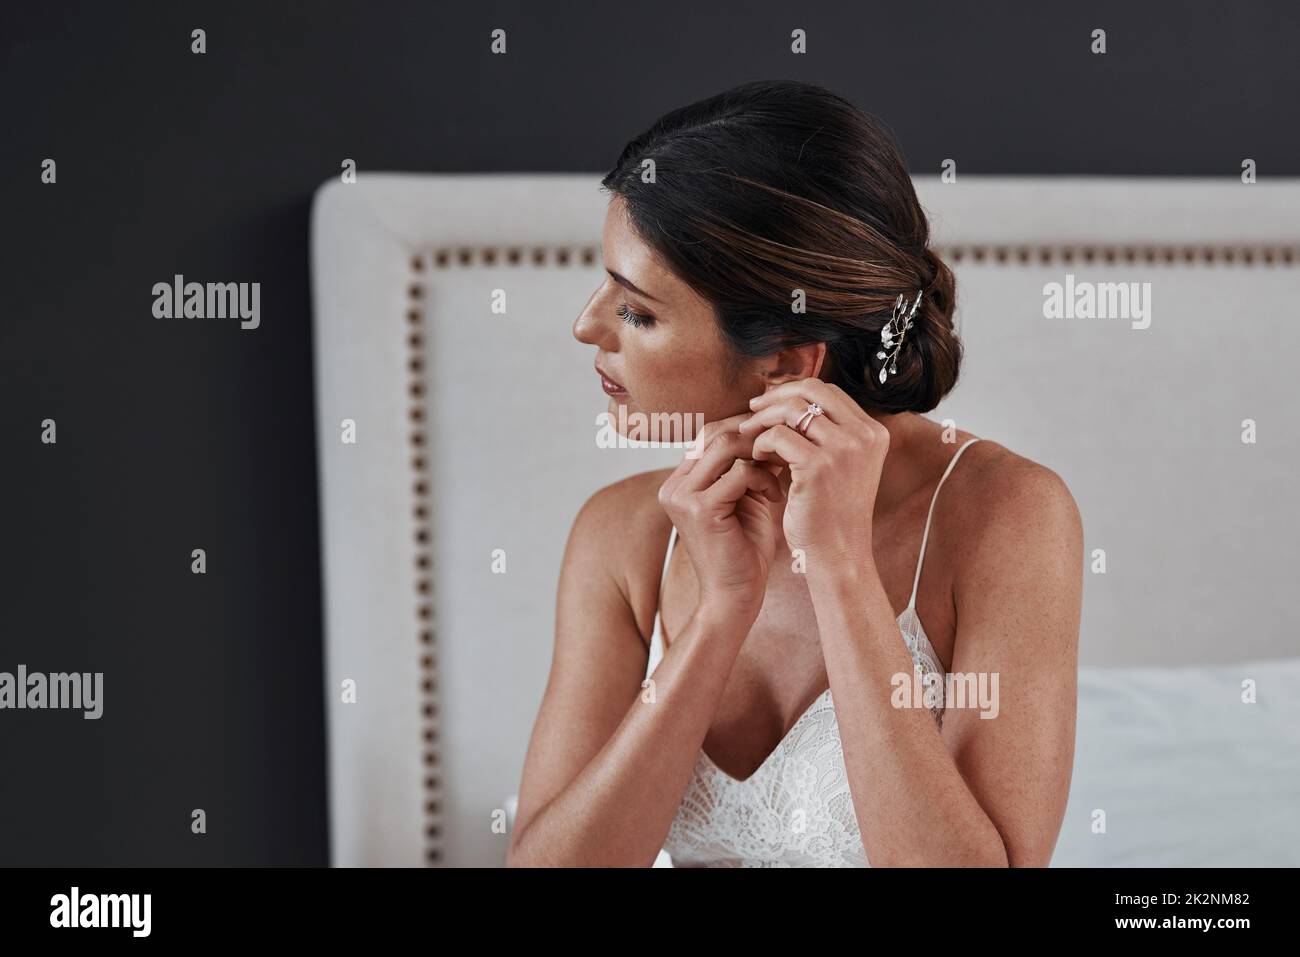 Diese Ohrringe sind etwas Neues für sie. Gekürzte Aufnahme einer attraktiven jungen Braut, die ihre Ohrringe anlegt, während sie sich für ihre Hochzeitszeremonie anzieht. Stockfoto